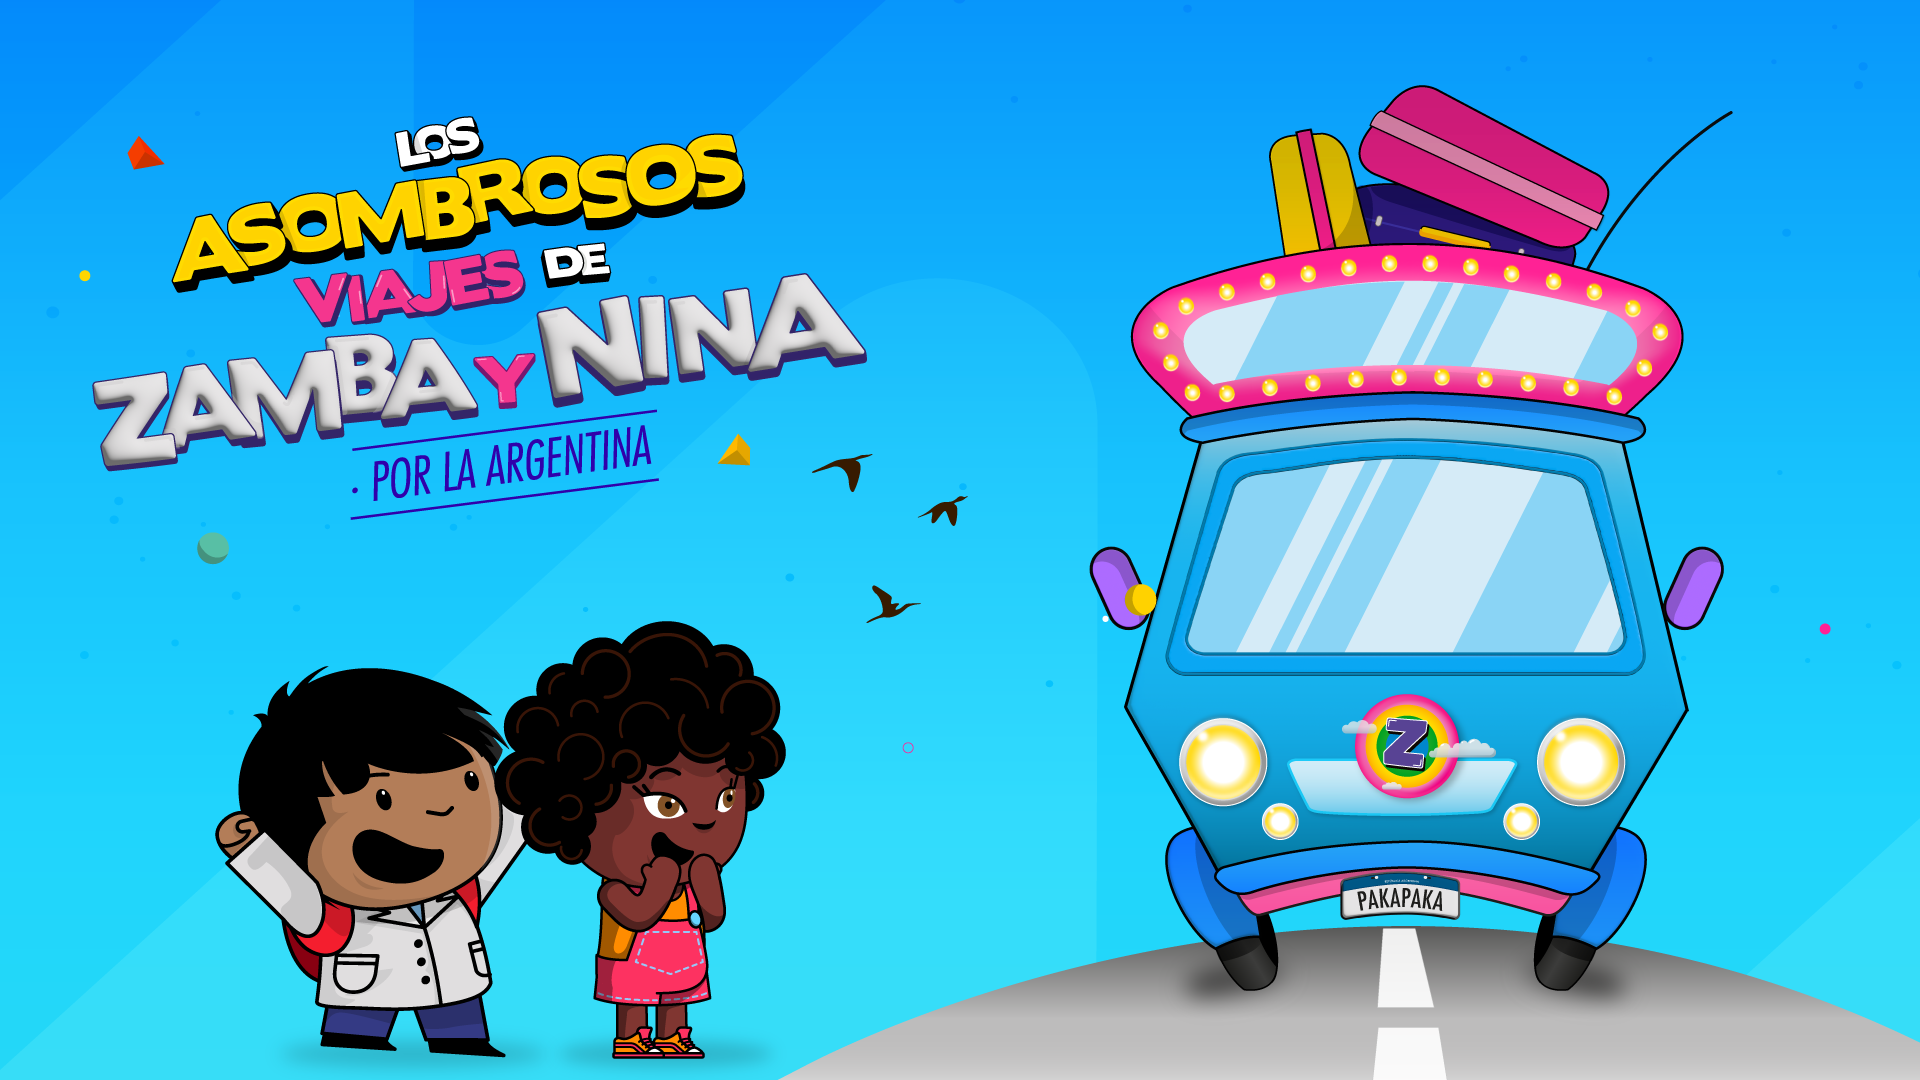 "Los asombrosos viajes de Zamba y Nina por la Argentina" es la primera serie donde interactúan personajes y fondos reales y son animados en 3D en el espacio ANIMAR MoCap.